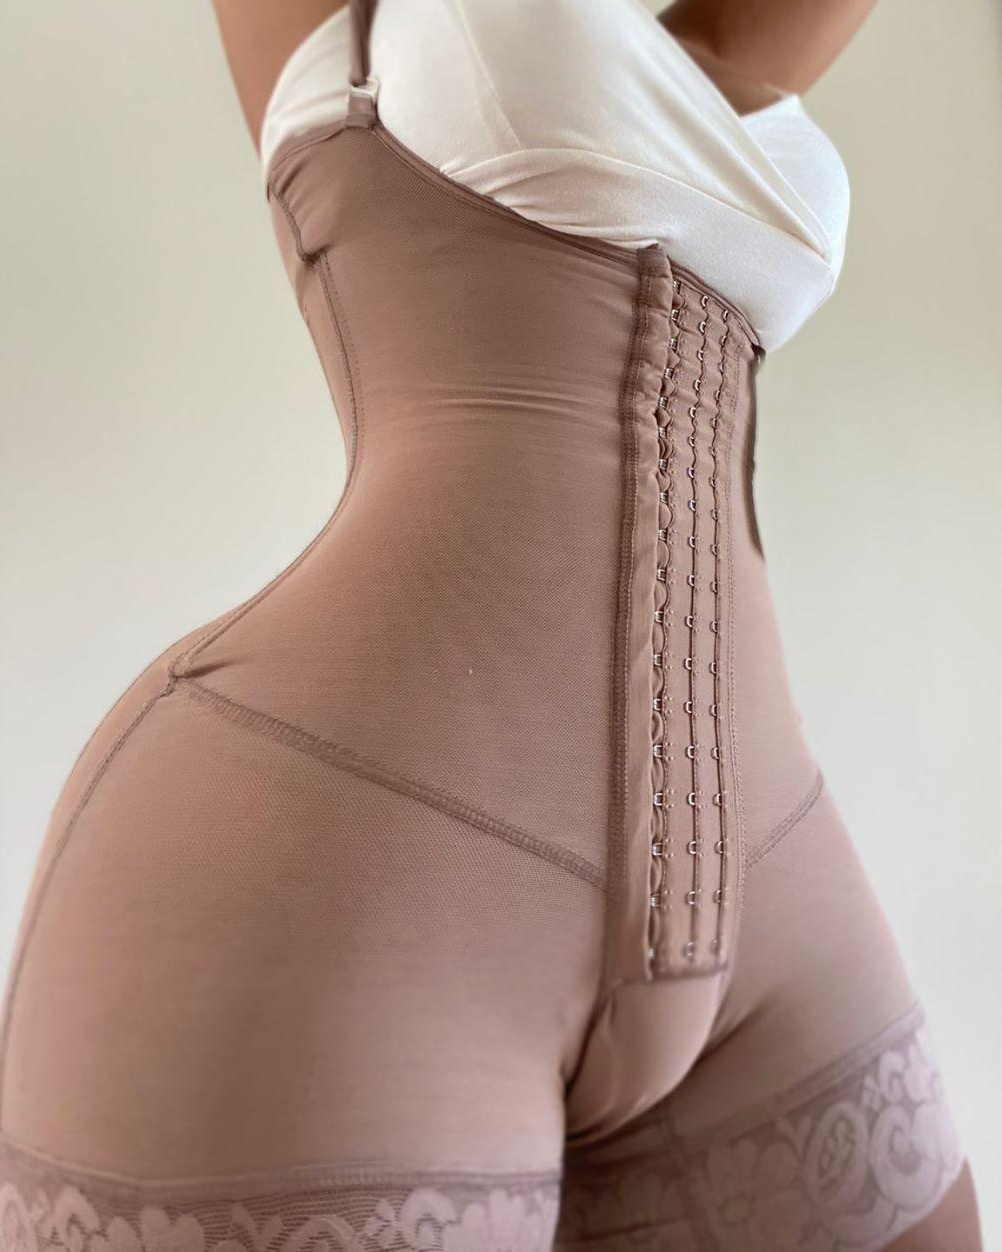 VBXOAE Women Shapewear Bodysuit Waist Trainer Full Body Shaper Tummy  Control Fajas Colombianas Bust Corset 